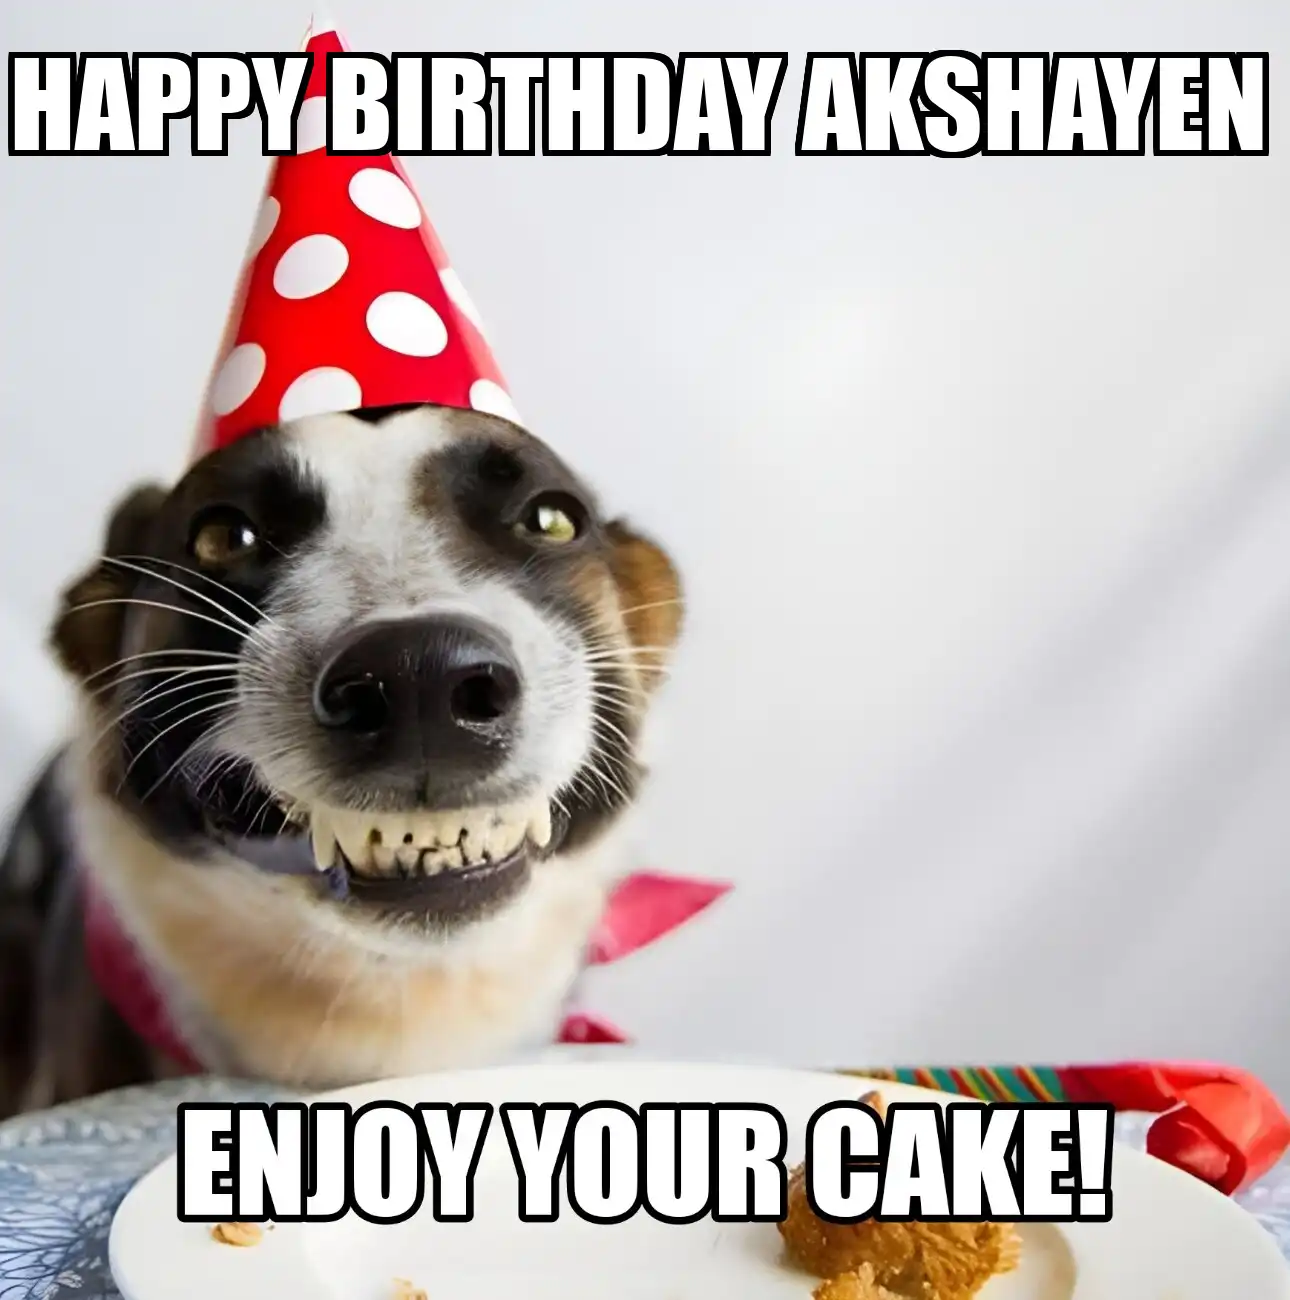 Happy Birthday Akshayen Enjoy Your Cake Dog Meme